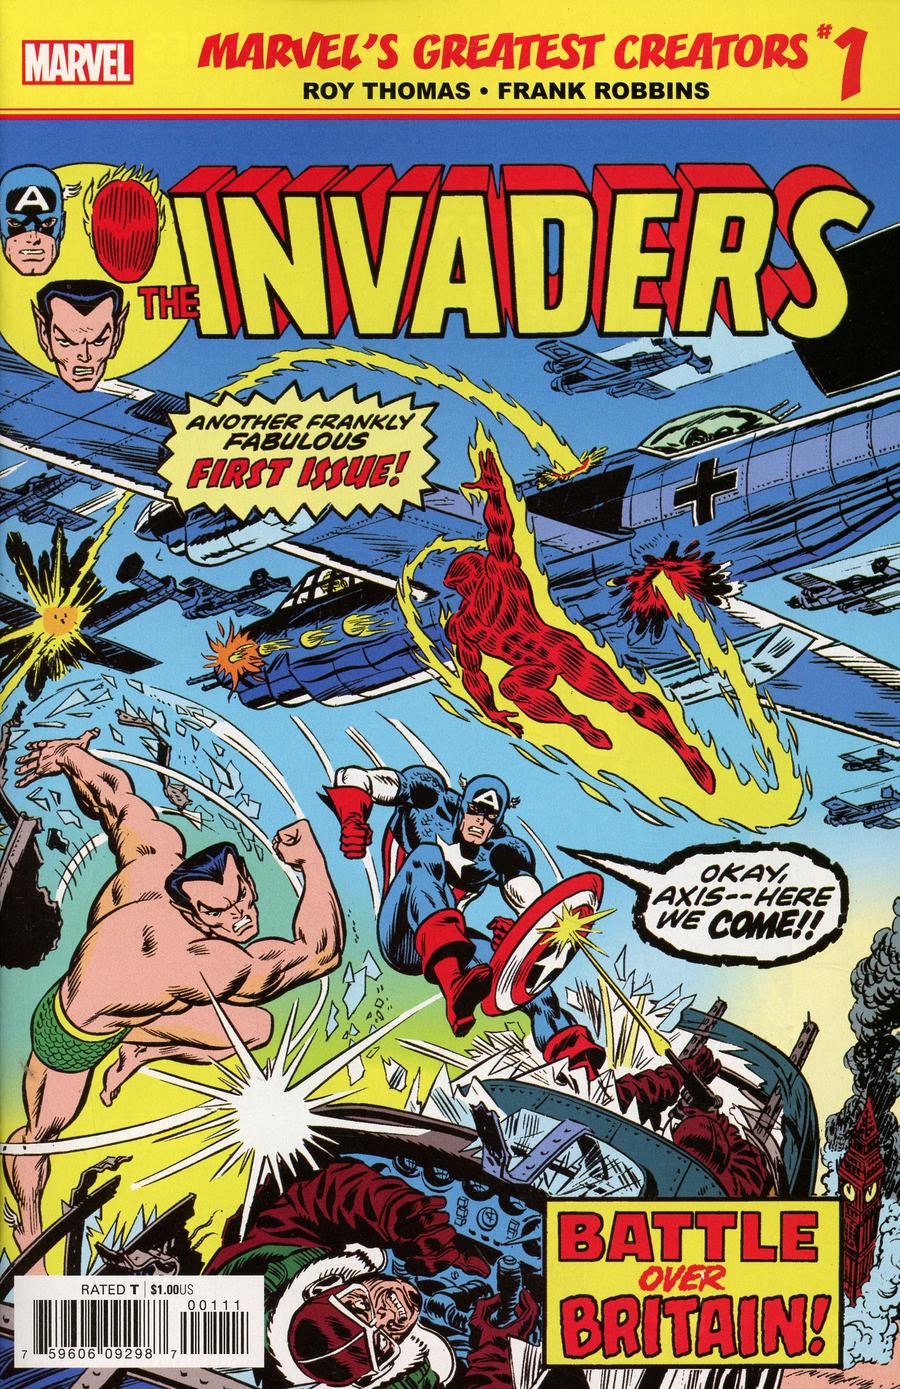 Marvels Greatest Creators Invaders #1